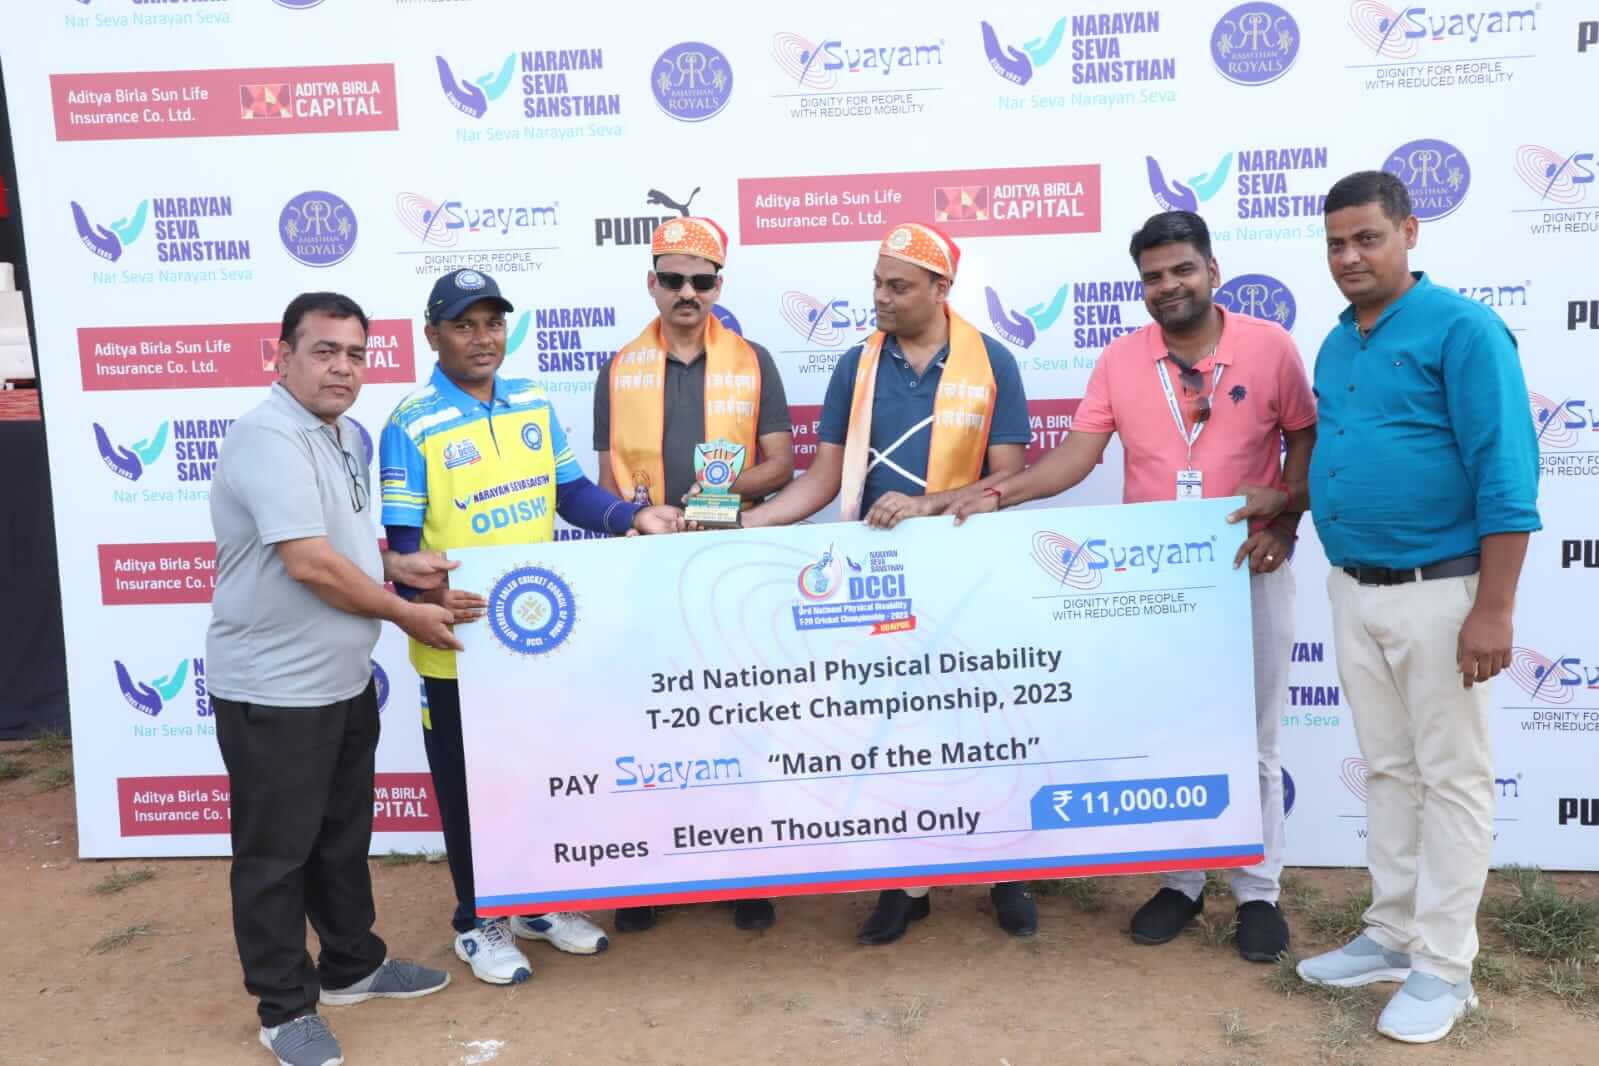 नेशनल शारीरिक दिव्यांग टी – 20 क्रिकेट चैंपियनशिप, नारायण सेवा संस्थान, राजस्थान रॉयल्स एवं डीसीसीआई के तत्वावधान में